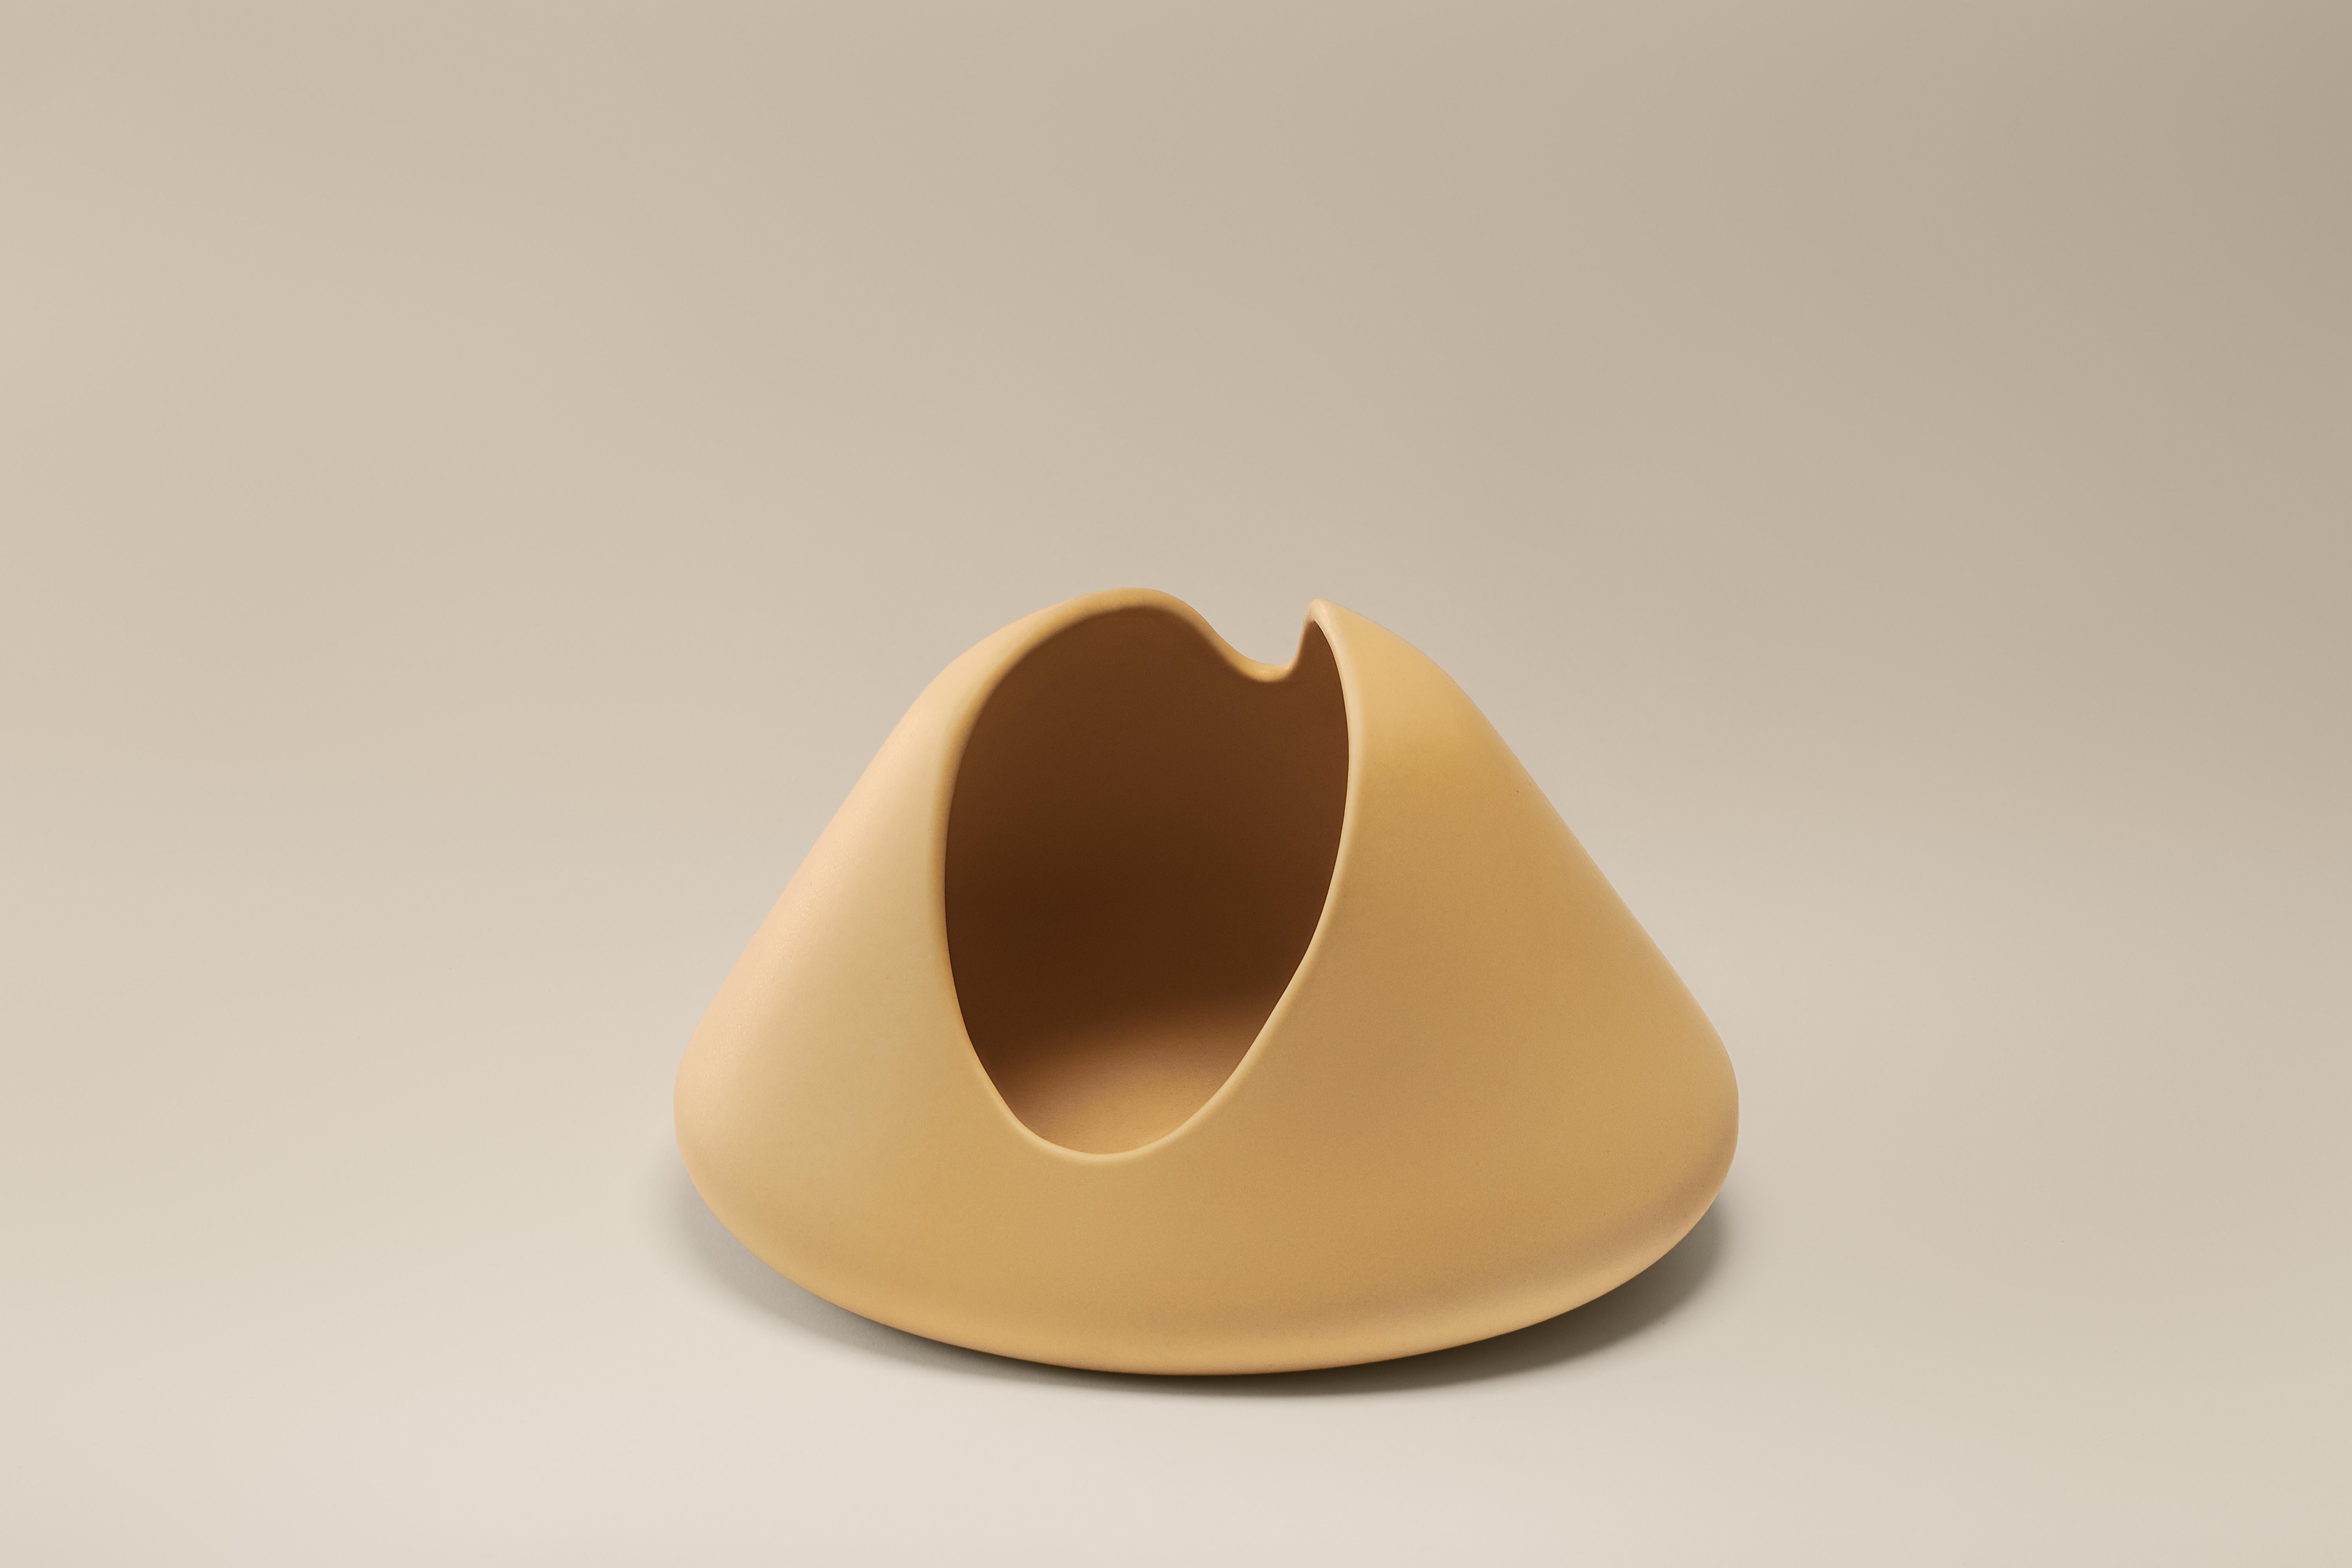 Boro-Vase von Lilia Cruz Corona Garduño
Abmessungen: B 22,3 x T 19,5 x H 13 cm
MATERIALIEN: Hochtemperatur-Keramik (Steinzeug) und keramische Glasur

Das Studio Platalea ist aus einer Leidenschaft für Kunst und Design entstanden. Wir finden es toll,